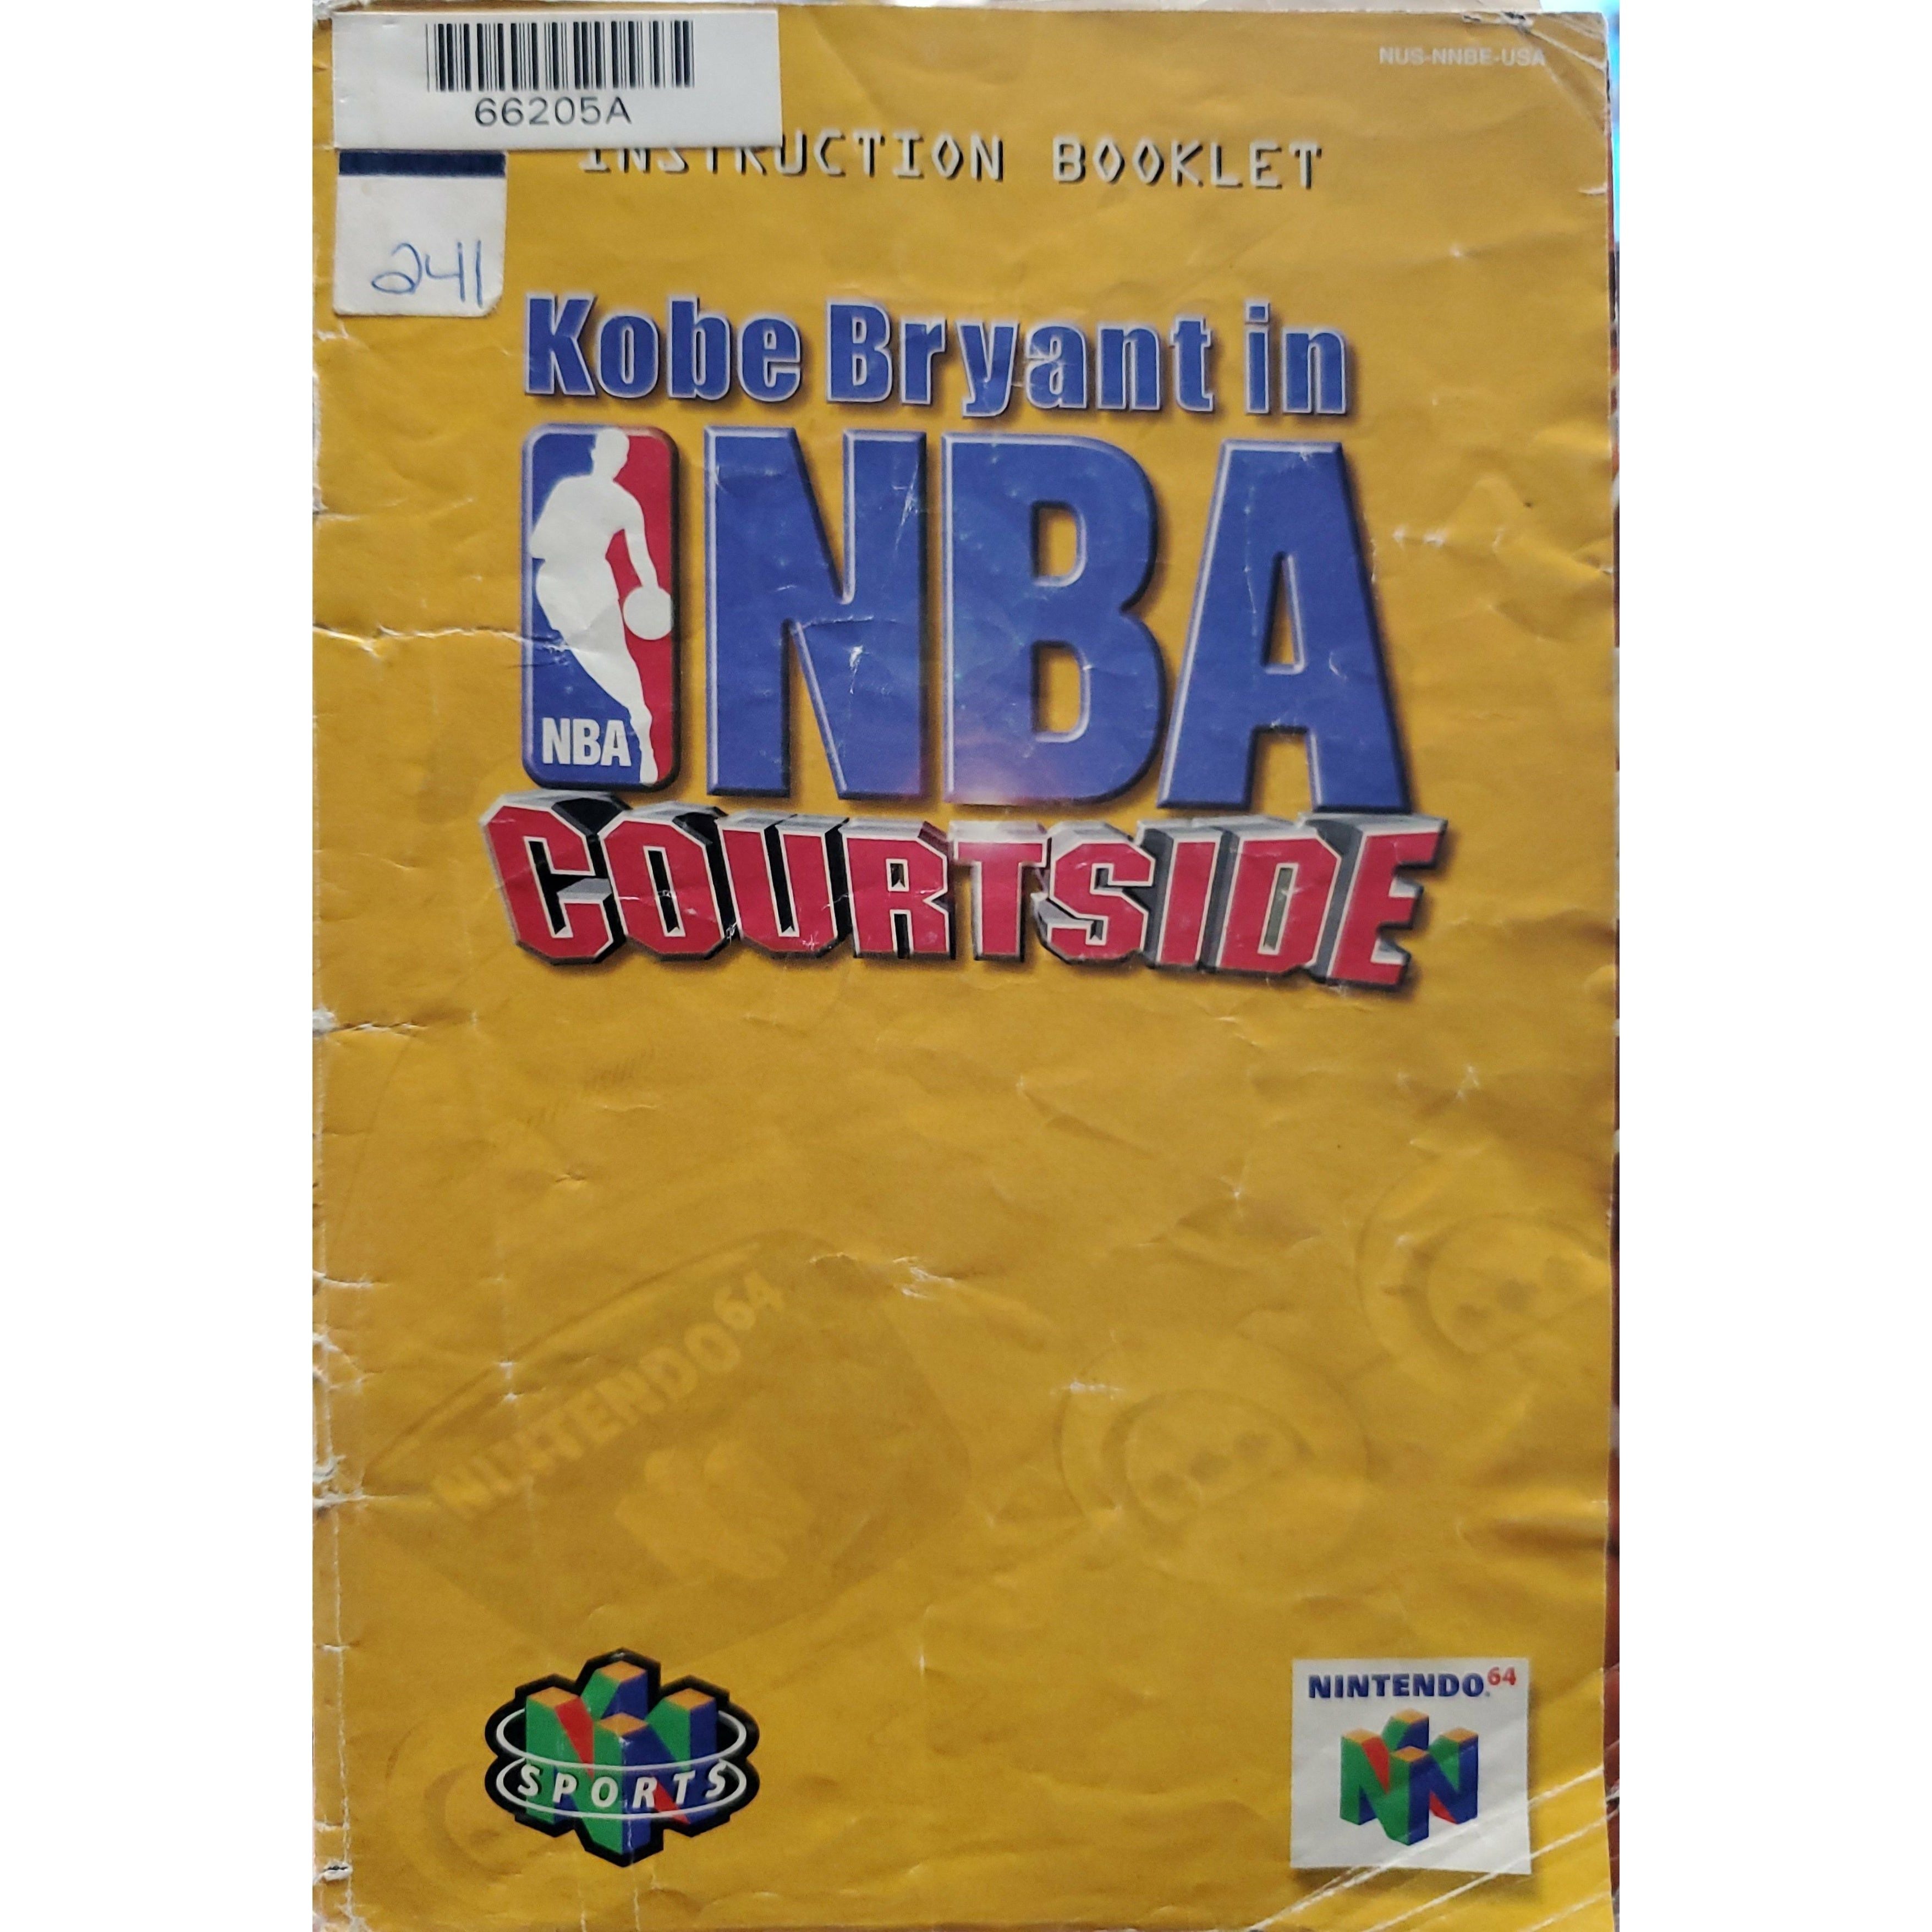 N64 - Kobe Bryant in NBA Courtside (Manual / Worn)